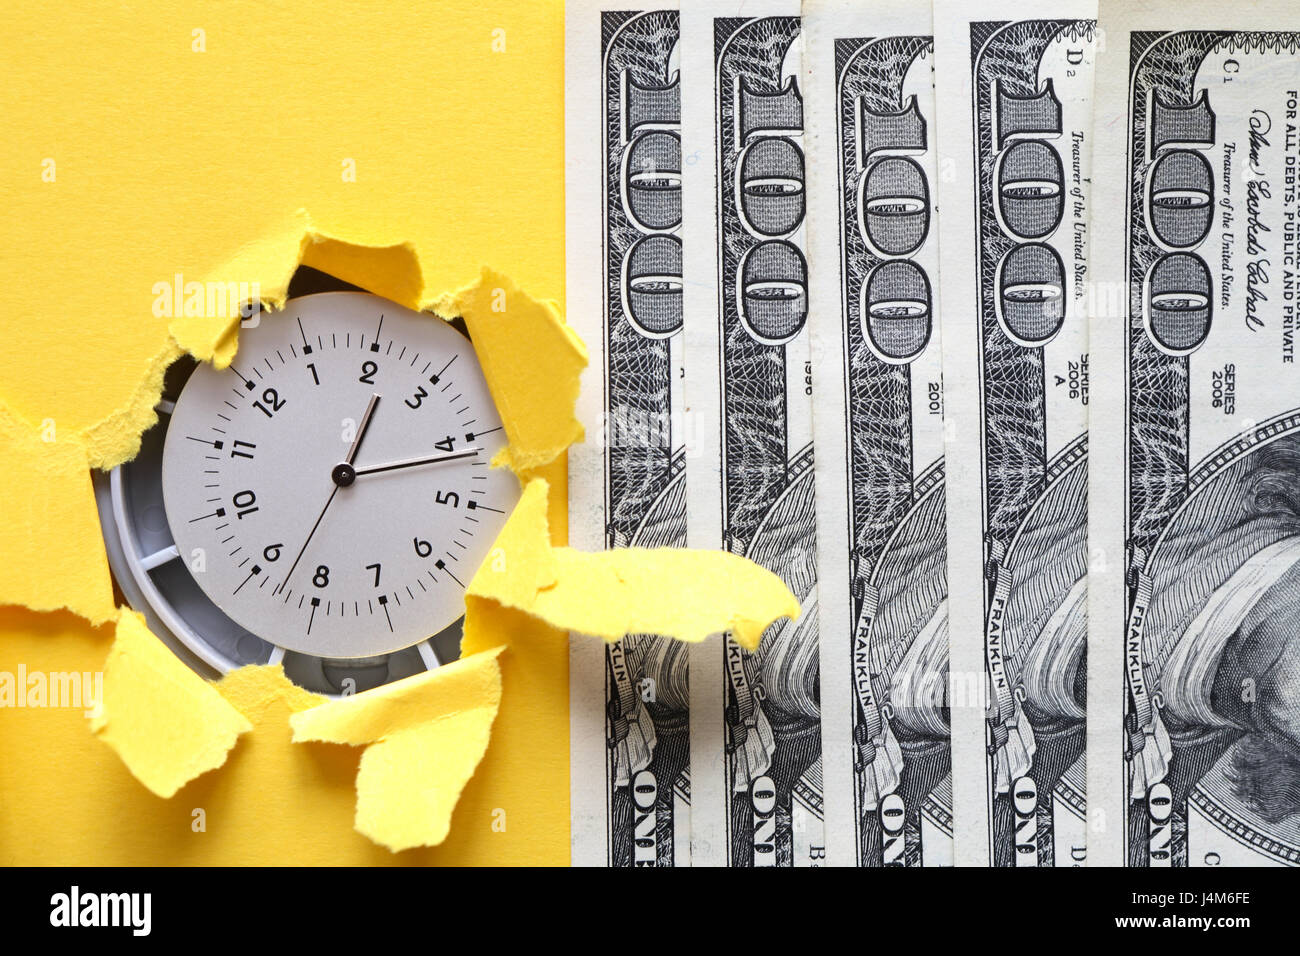 Zeit ist Geld. Uhr in Loch in gelbem Papier in der Nähe von hundert-Dollar-Banknoten Stockfoto